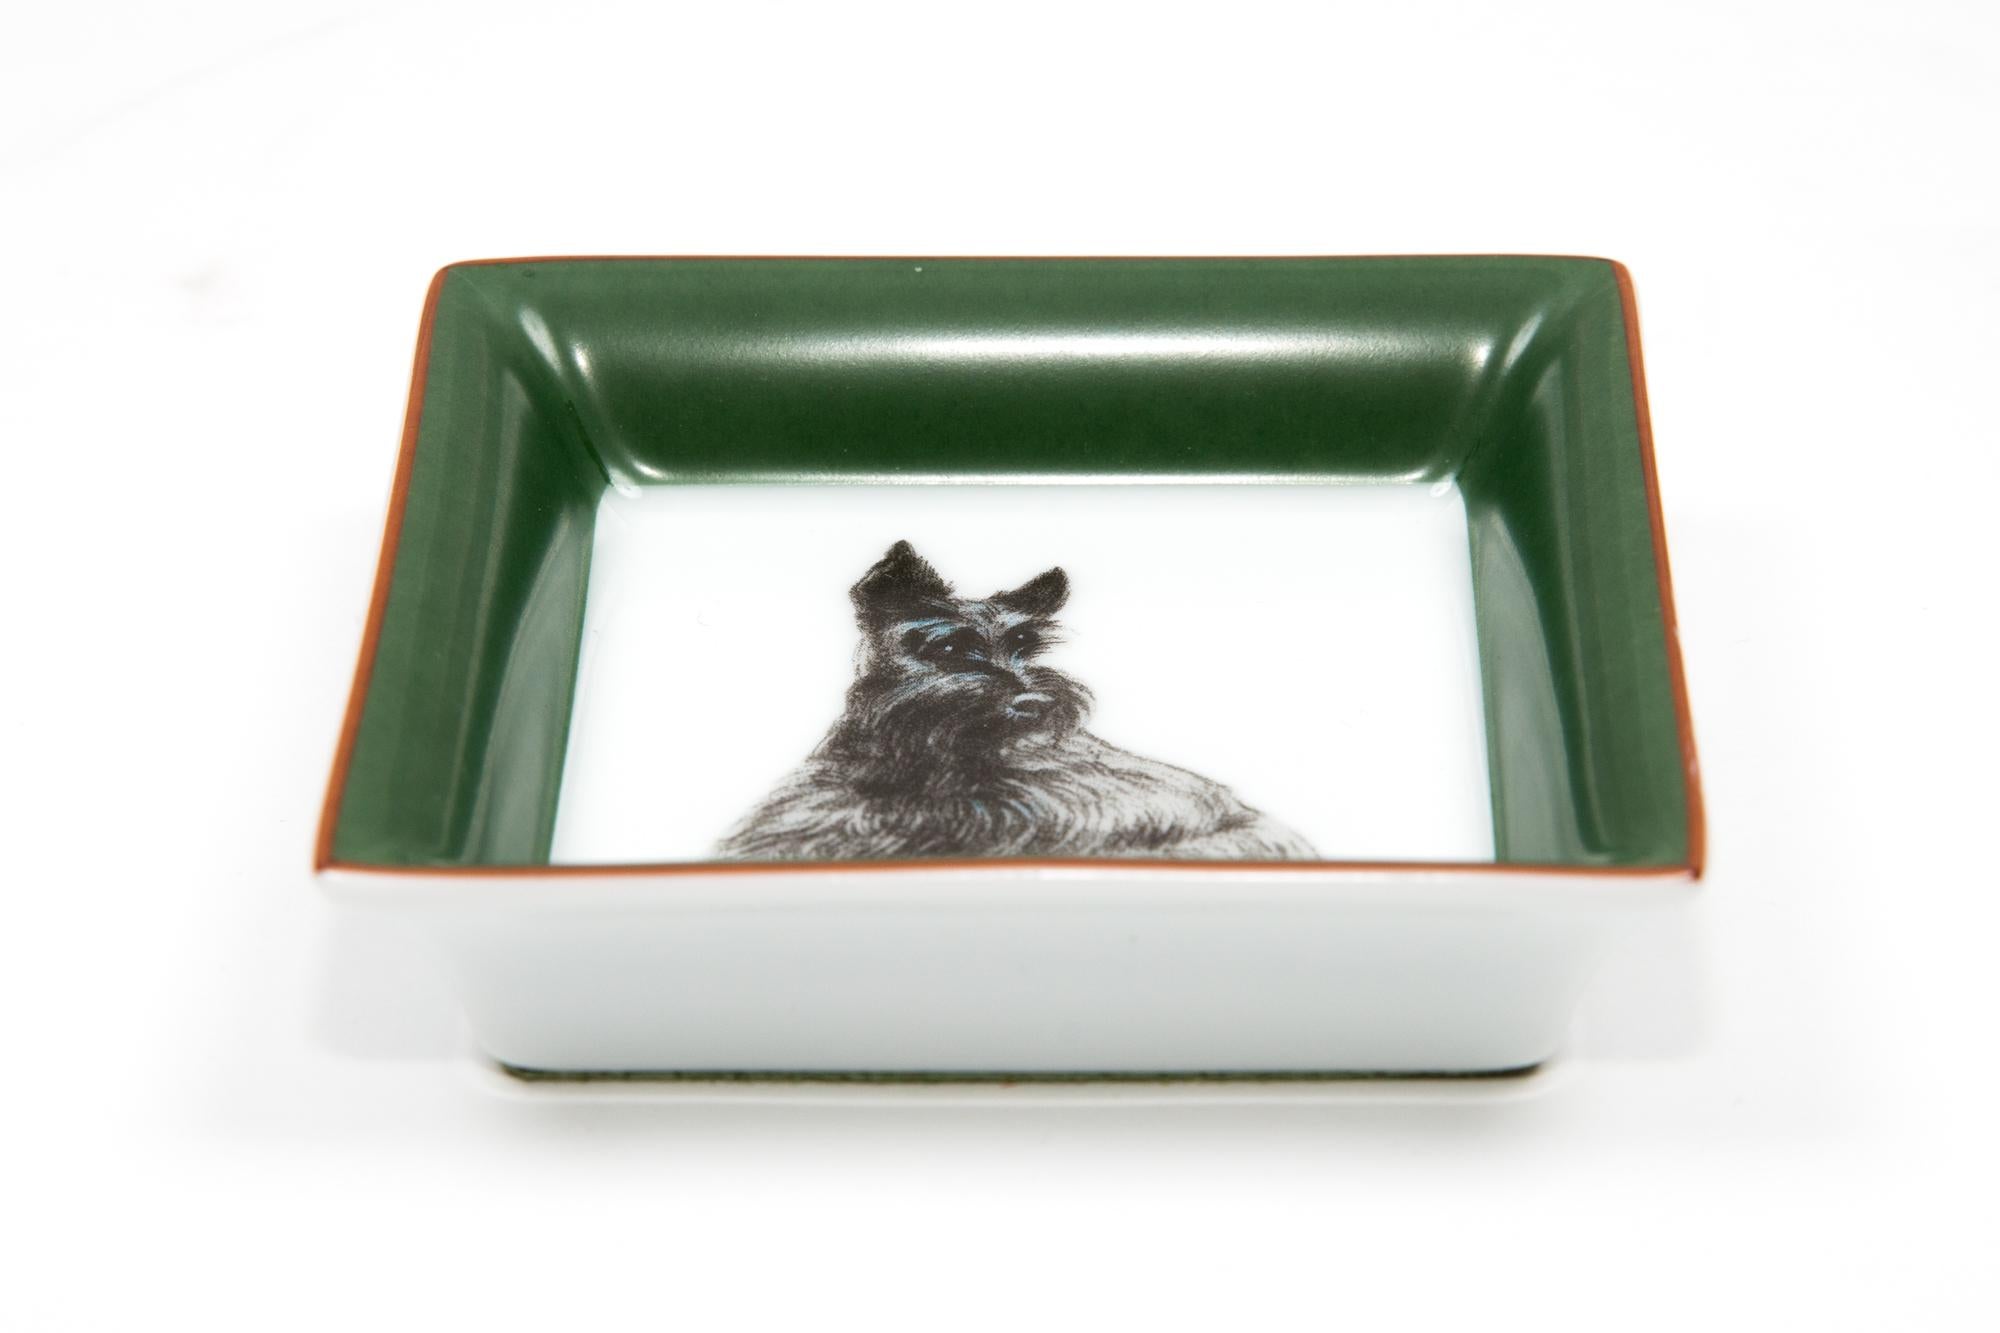 Hermès Scottish Terrier Dog Porzellan dekorative Organizer mit einer quadratischen Form, grün kontrastierenden trimmen, ein Hermes Signatur. 
in seinem Originalkarton geliefert.
CIRCA 2000er Jahre 
In gutem Vintage-Zustand. 
3,1 Zoll (8 cm) X 3,1